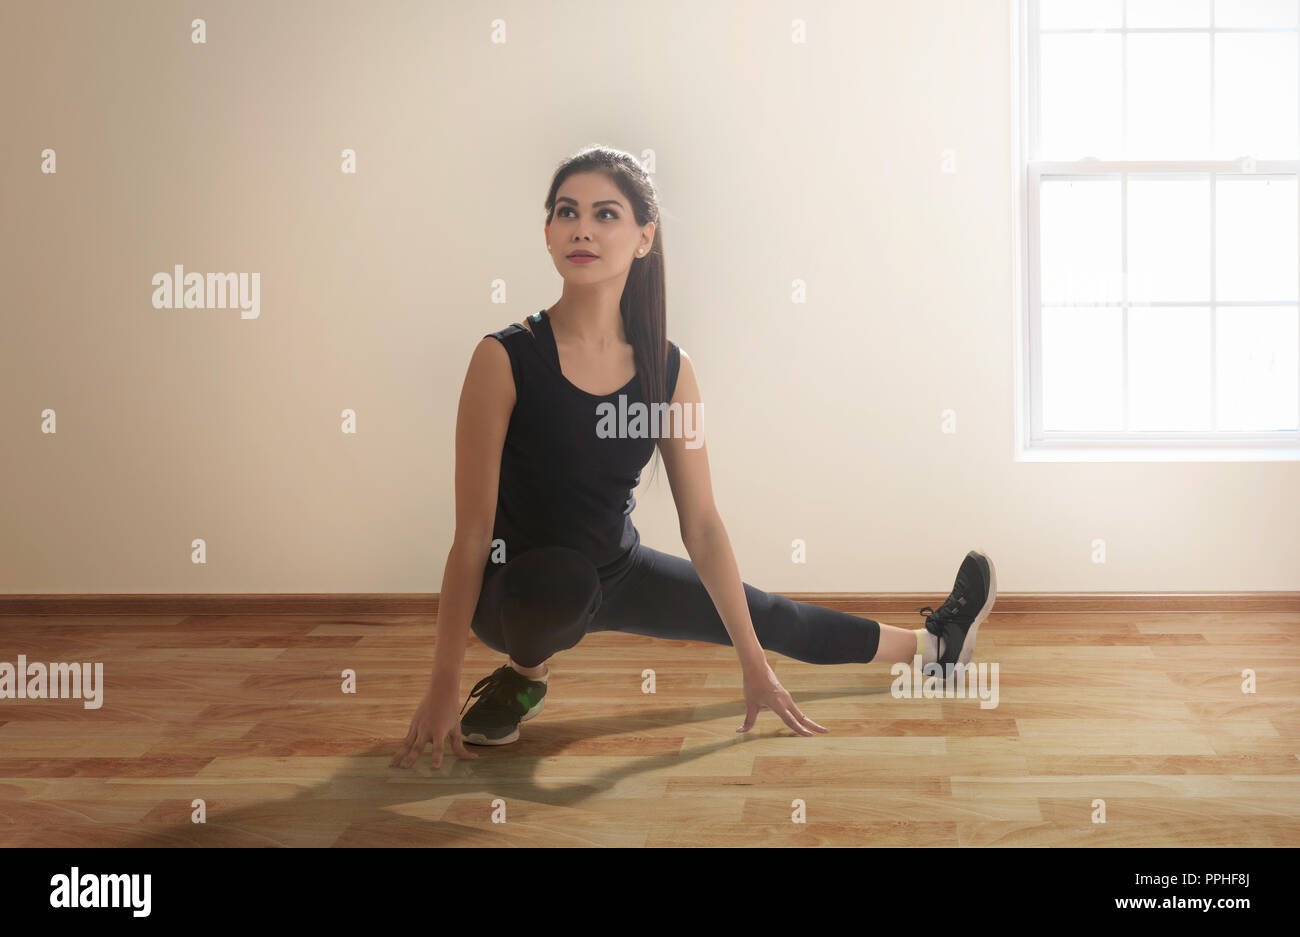 Junge Frau in Sportklamotten tun leg stretching Übungen auf dem Boden. Stockfoto